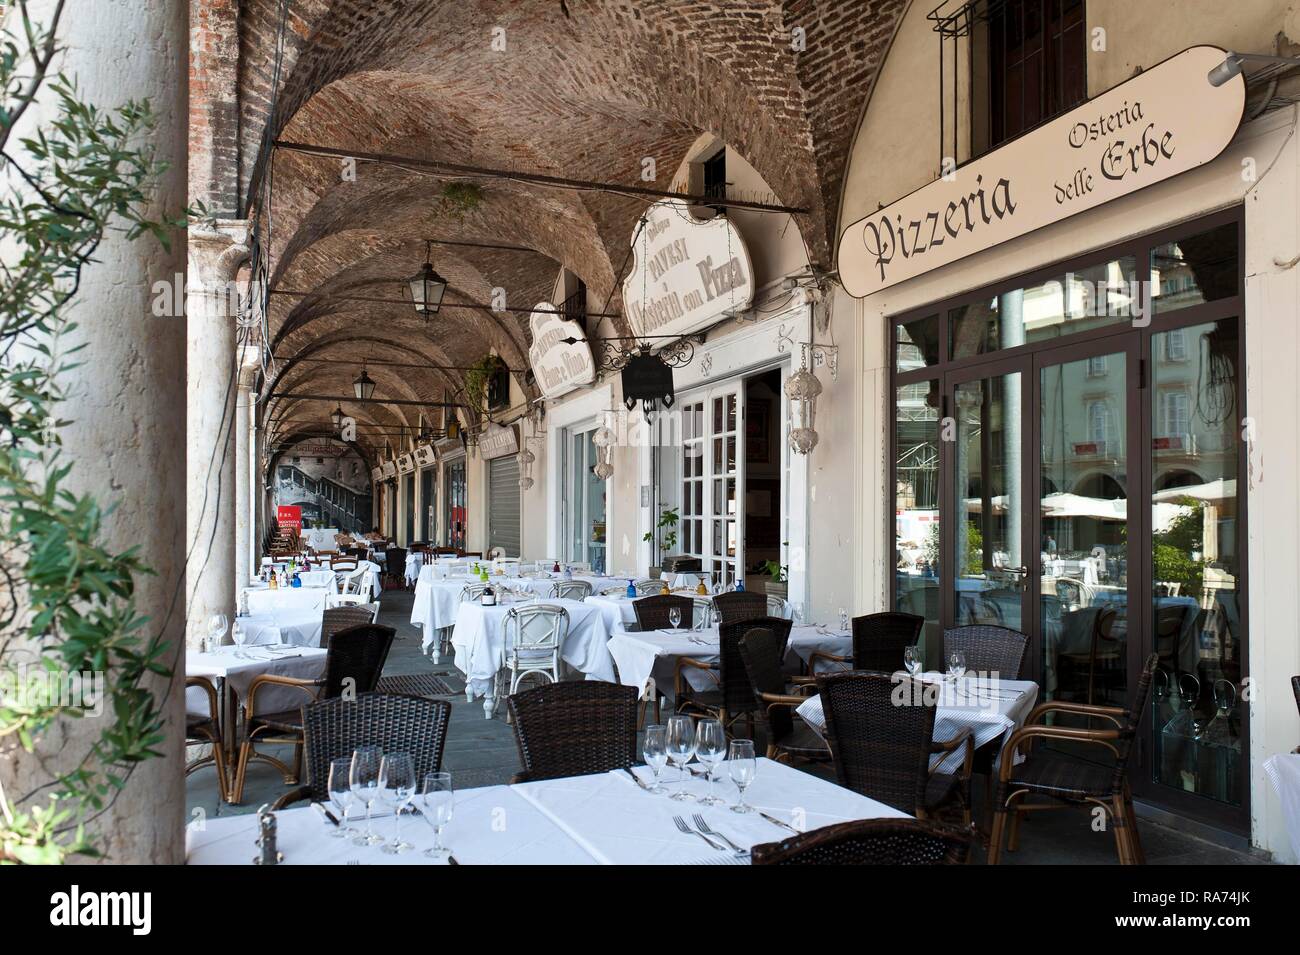 La gastronomie italienne, restaurant sous les arcades, pizzeria Osteria delle Erbe, Mantoue, Lombardie, Italie Banque D'Images